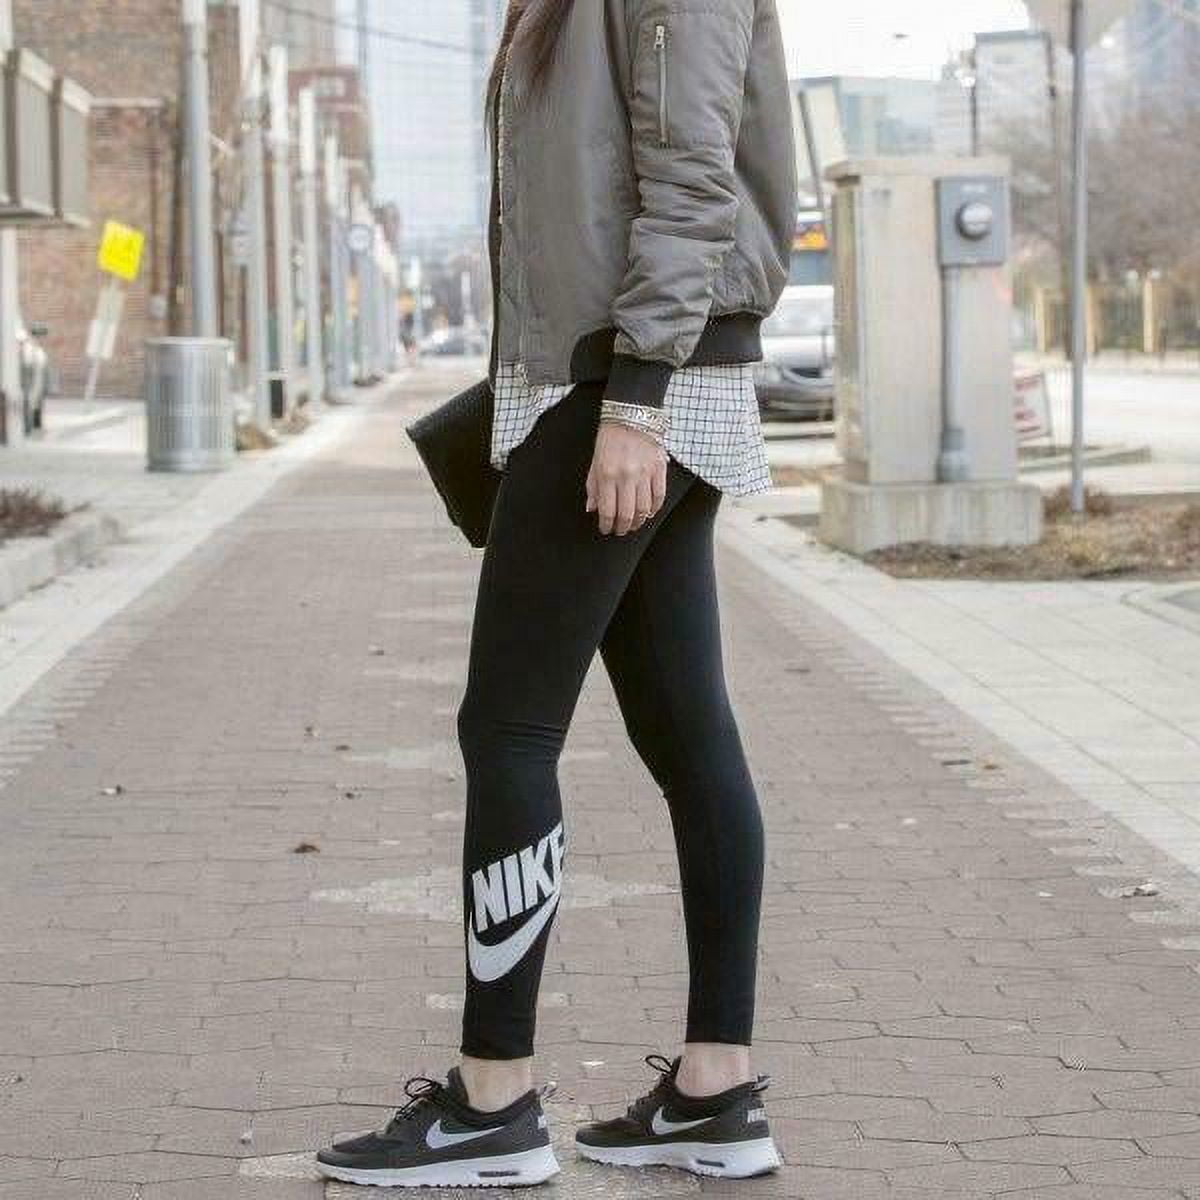 Nike Women's Just Do It Sportswear Training Gym Leggings Size S